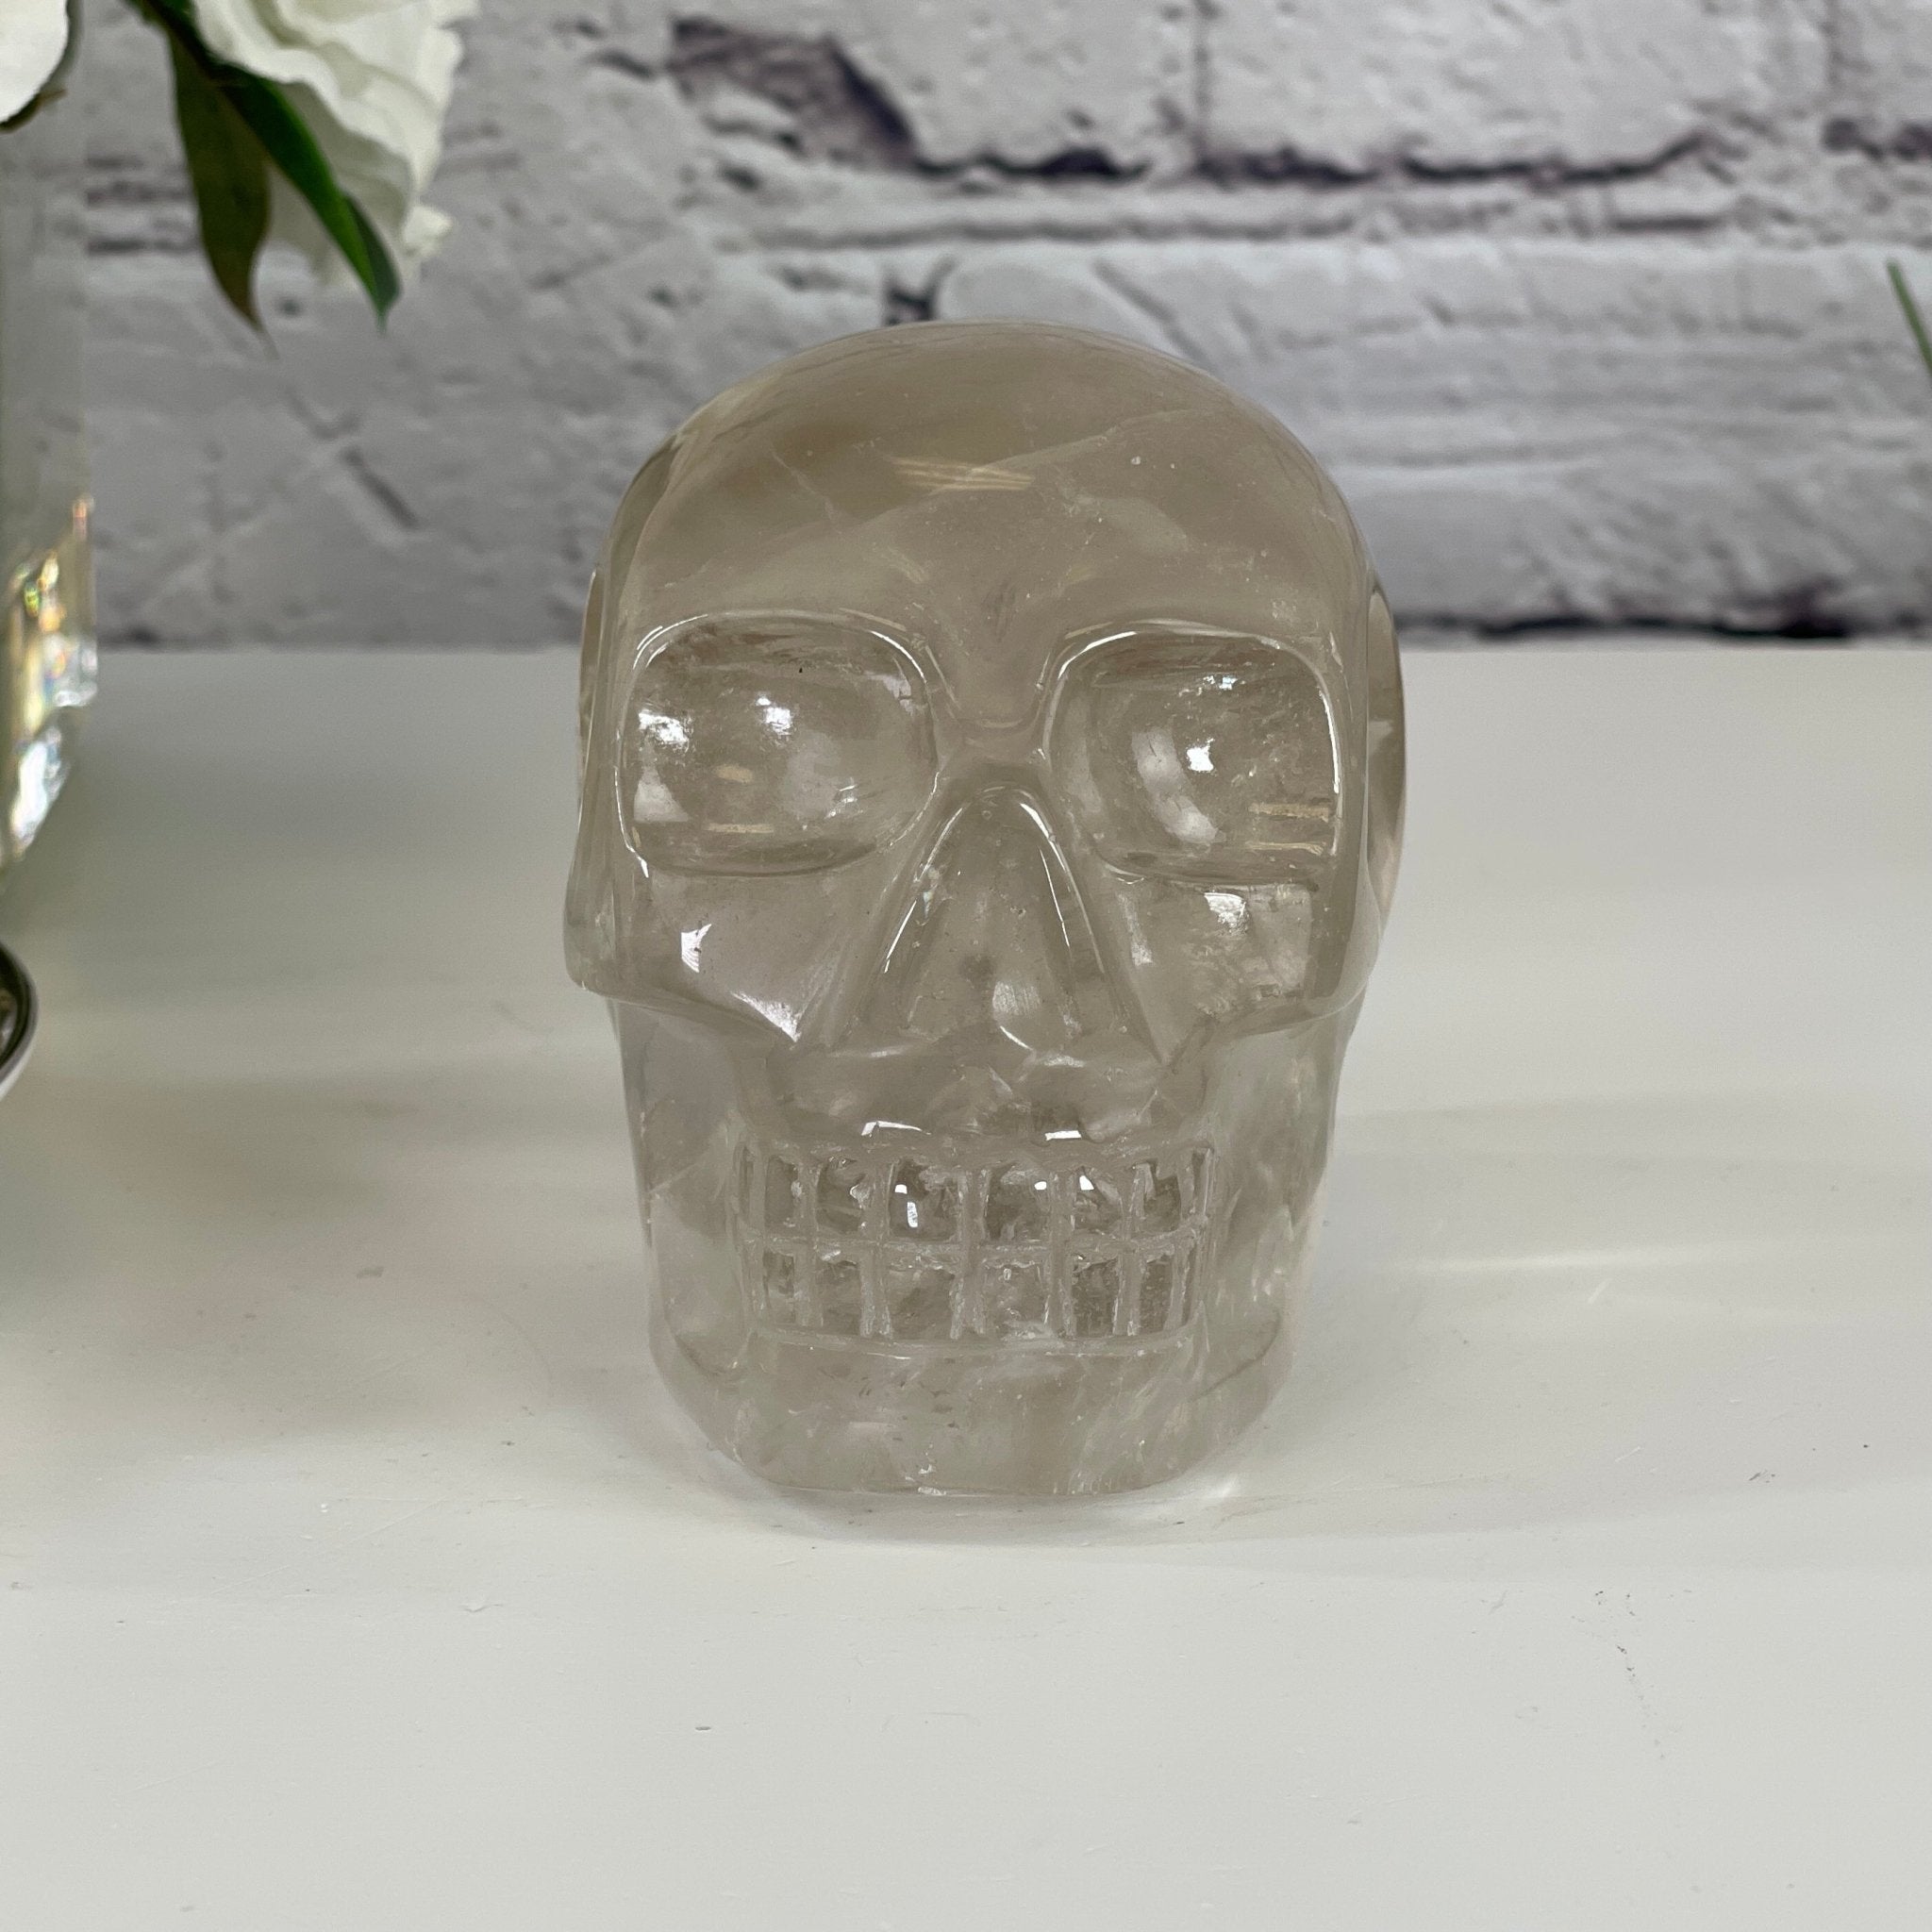 Handmade Clear Quartz Crystal Skull 3.25" tall Model #3477-0005 by Brazil Gems - Brazil GemsBrazil GemsHandmade Clear Quartz Crystal Skull 3.25" tall Model #3477-0005 by Brazil GemsSkulls3477-0005